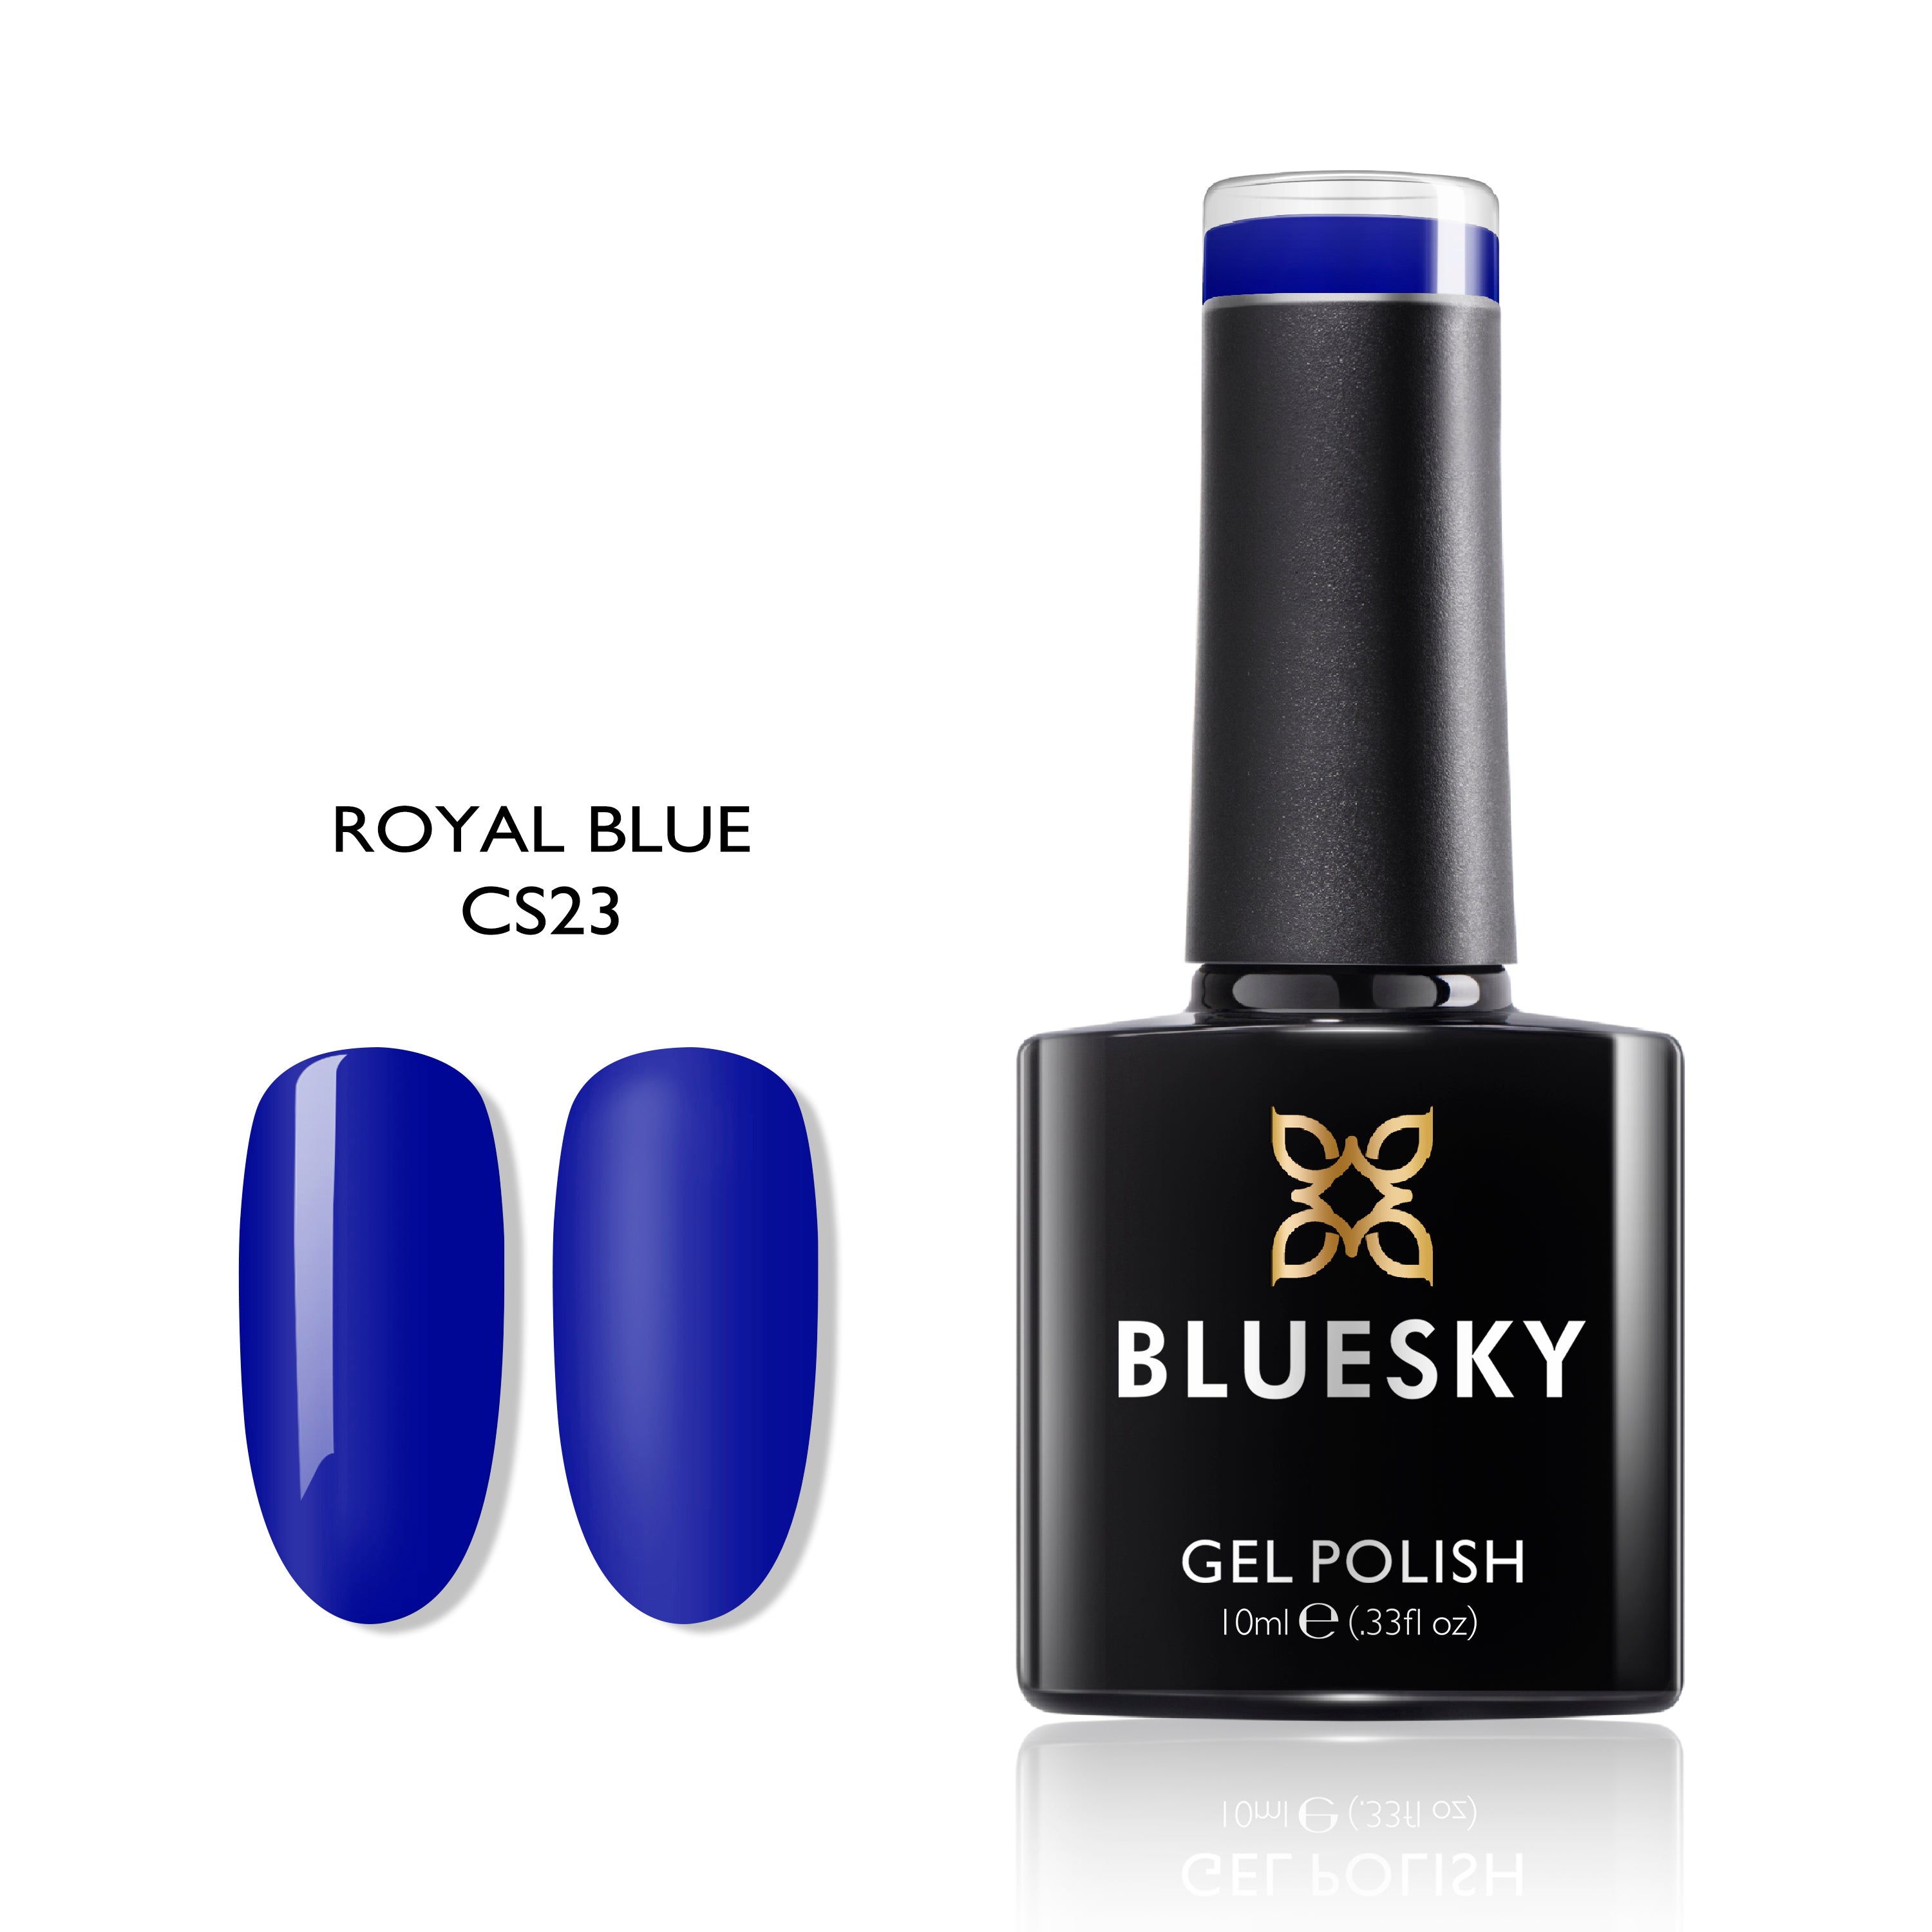 ROYAL BLUE | 10ml Gel Polish - BLUESKY